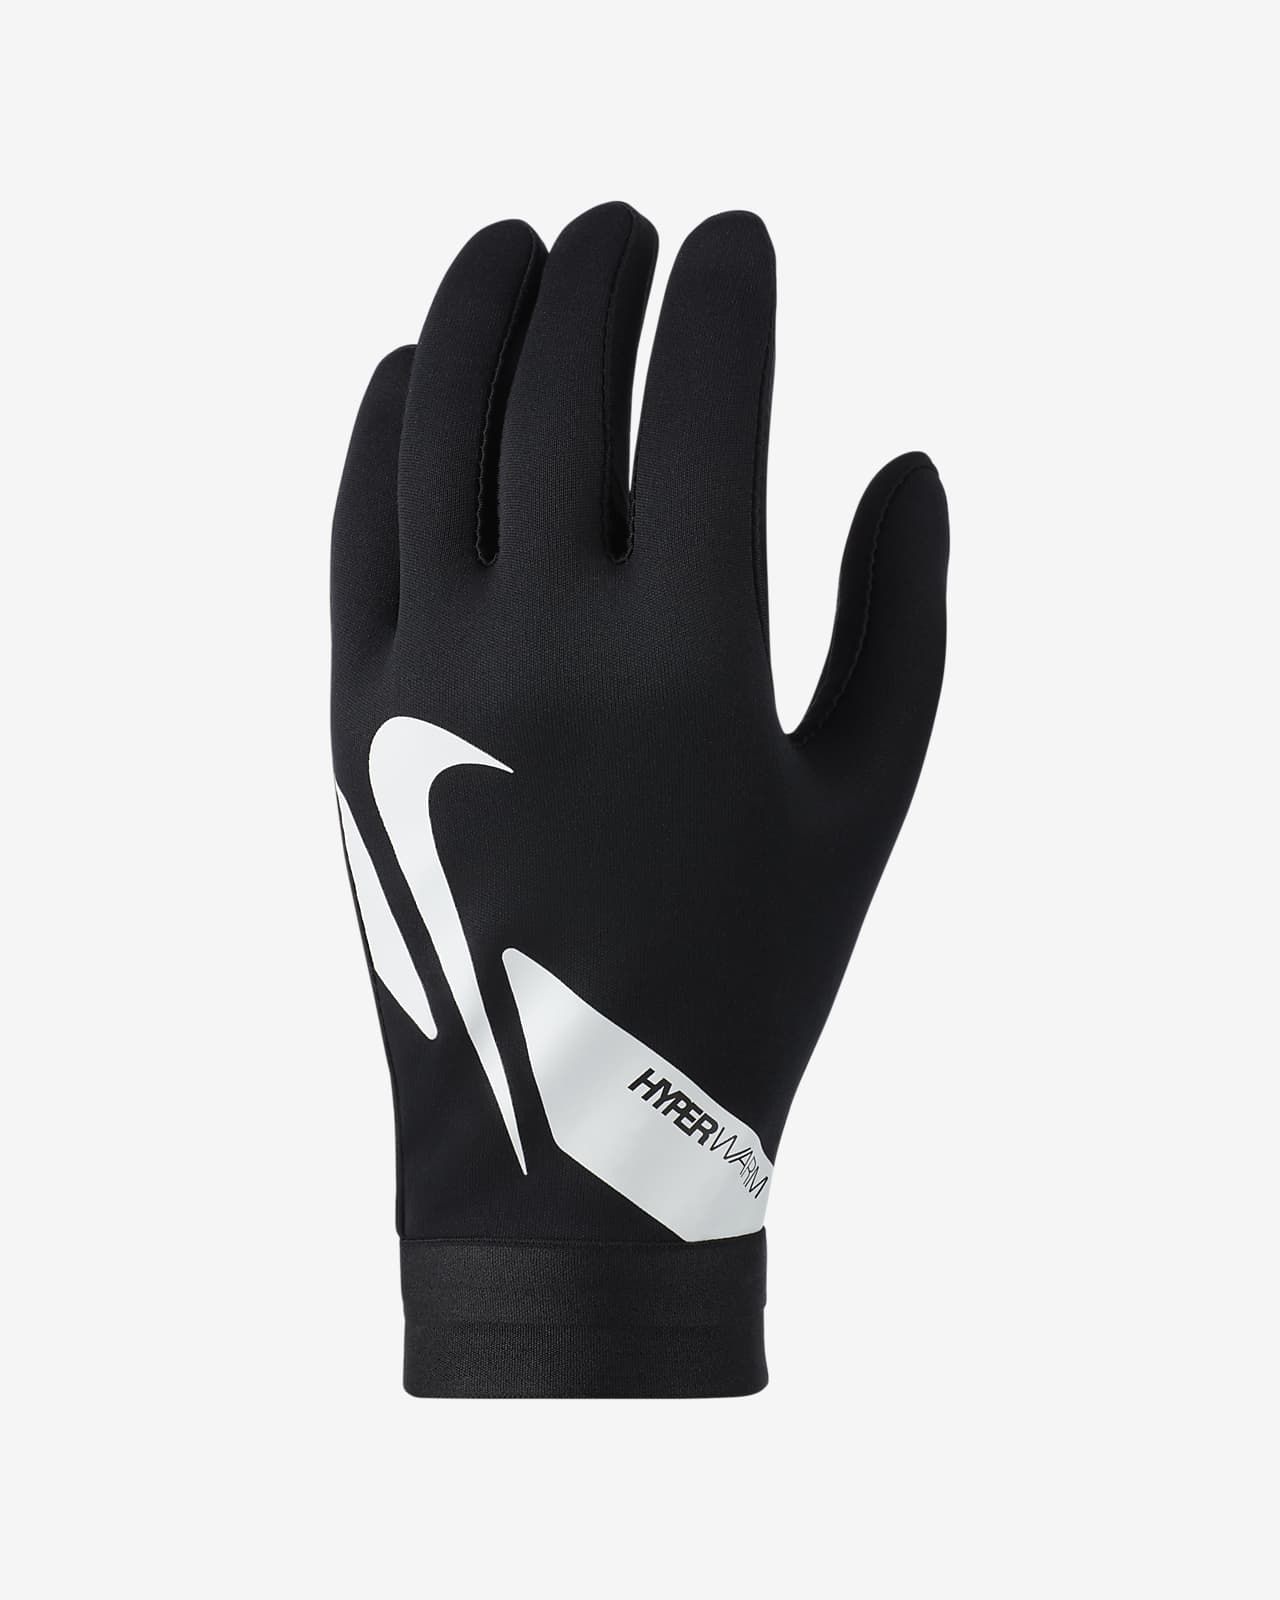 hyperwarm soccer gloves